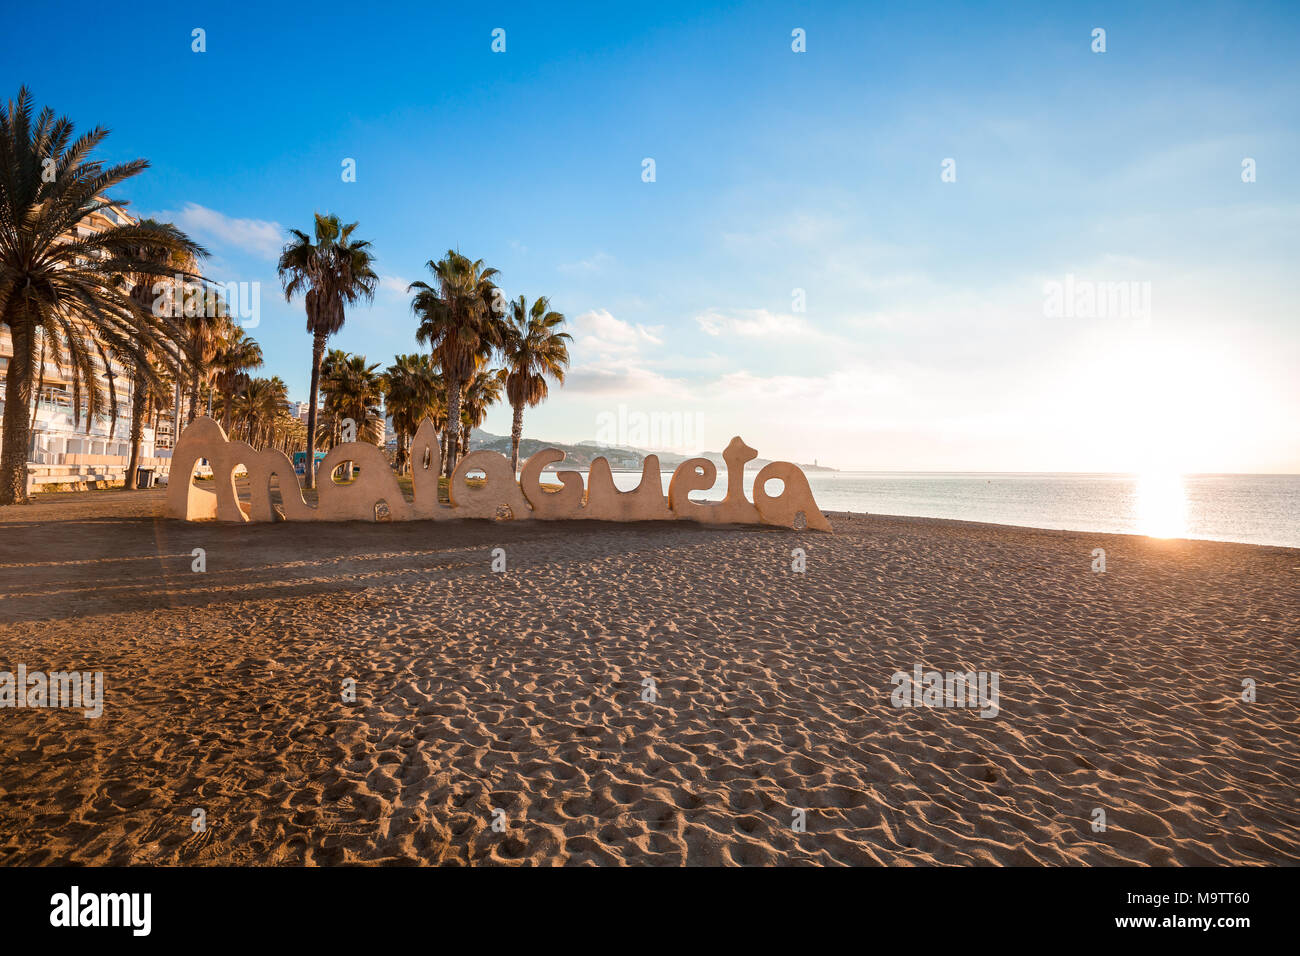 Malaga célèbre plage publique Banque D'Images